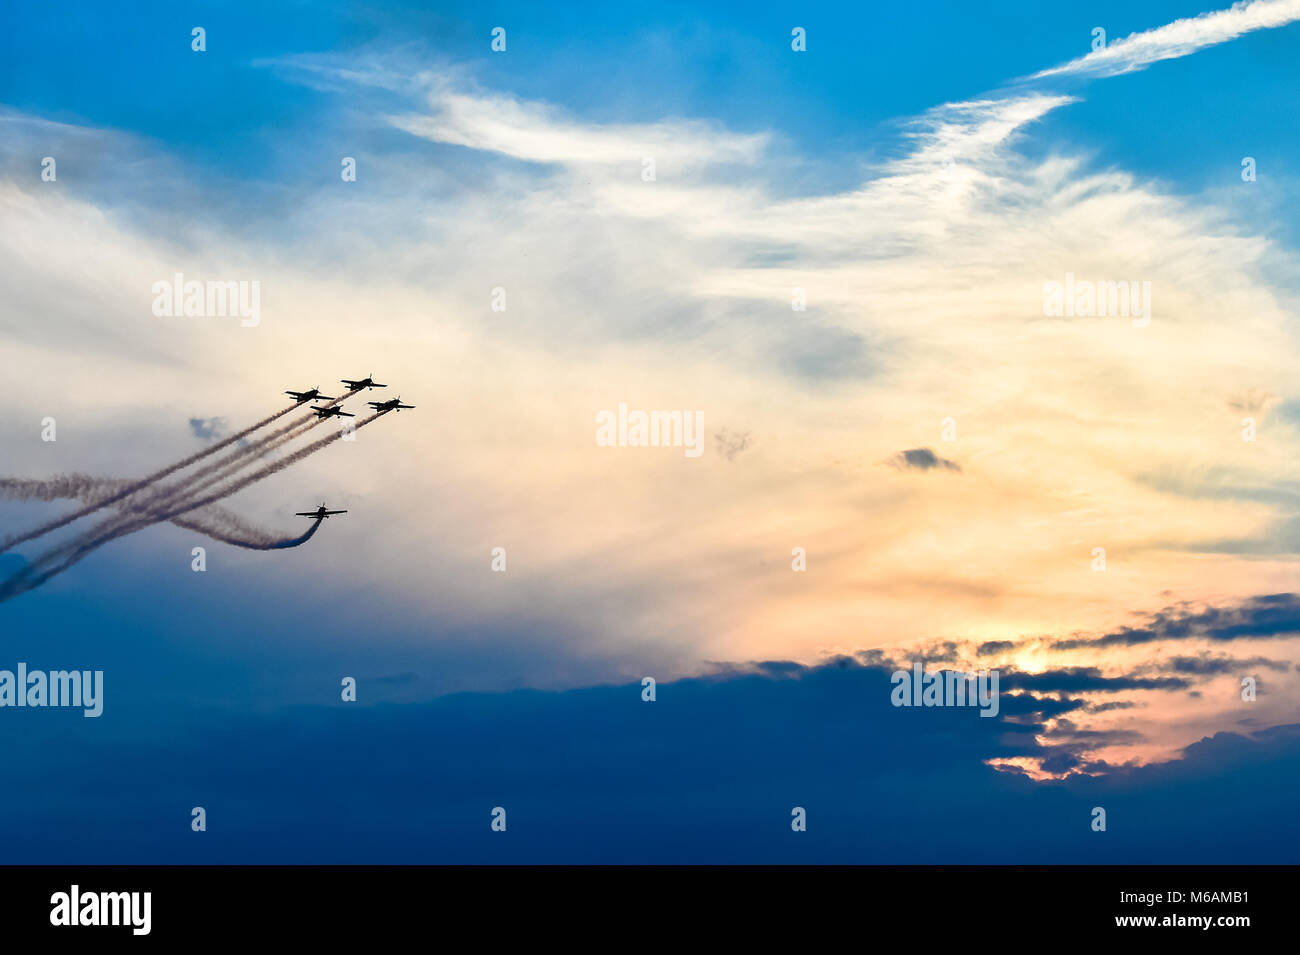 Aerei acrobatici in azione in un'Airshow di volare al tramonto / Crepuscolo Foto Stock